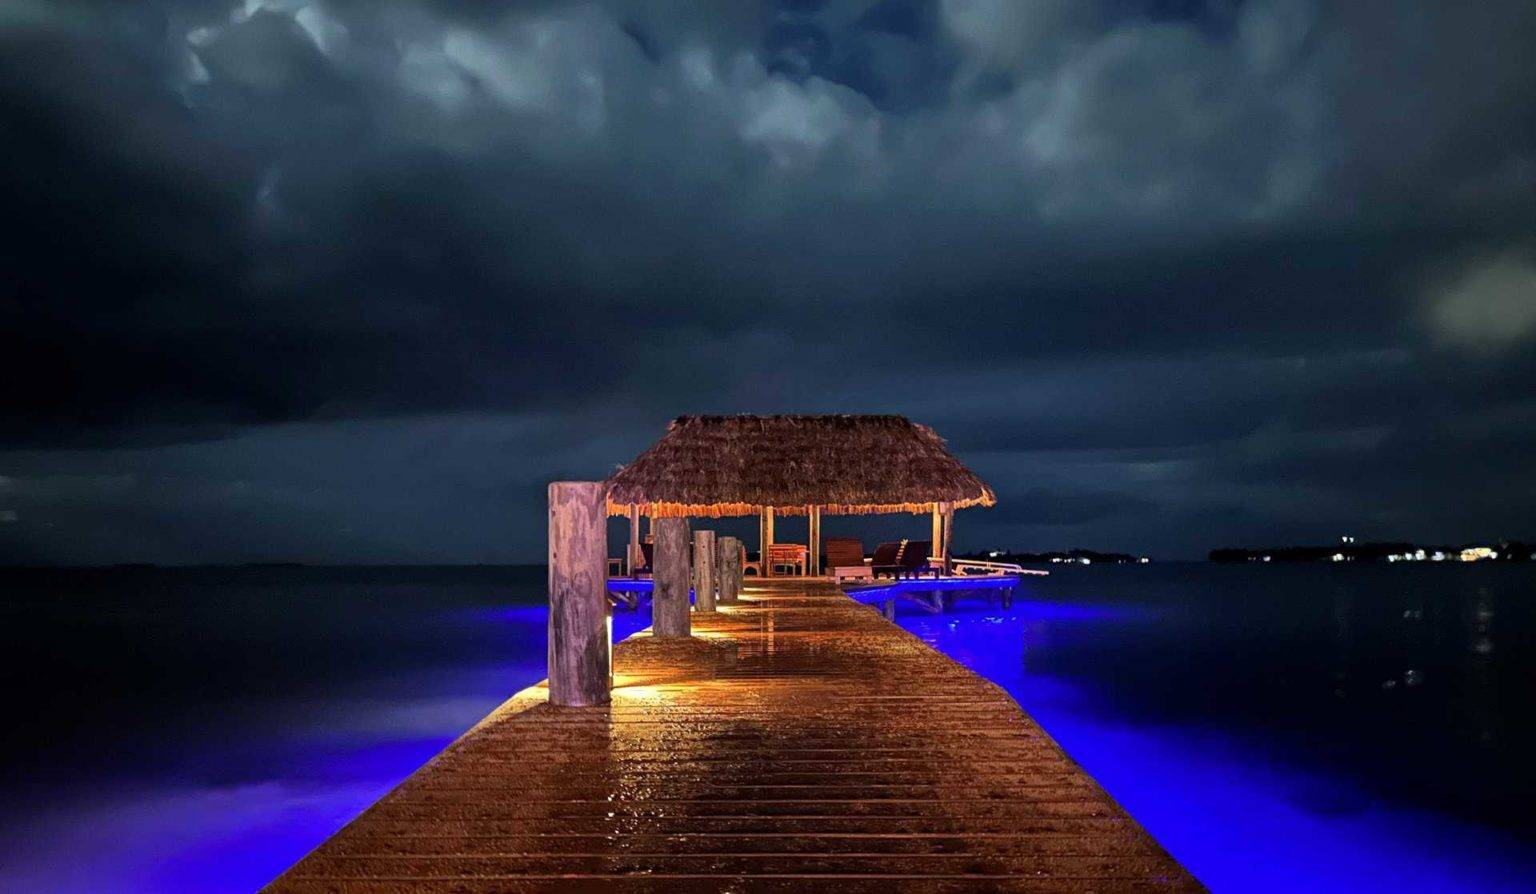 Chabil Mar Villas dock bar lit up at night